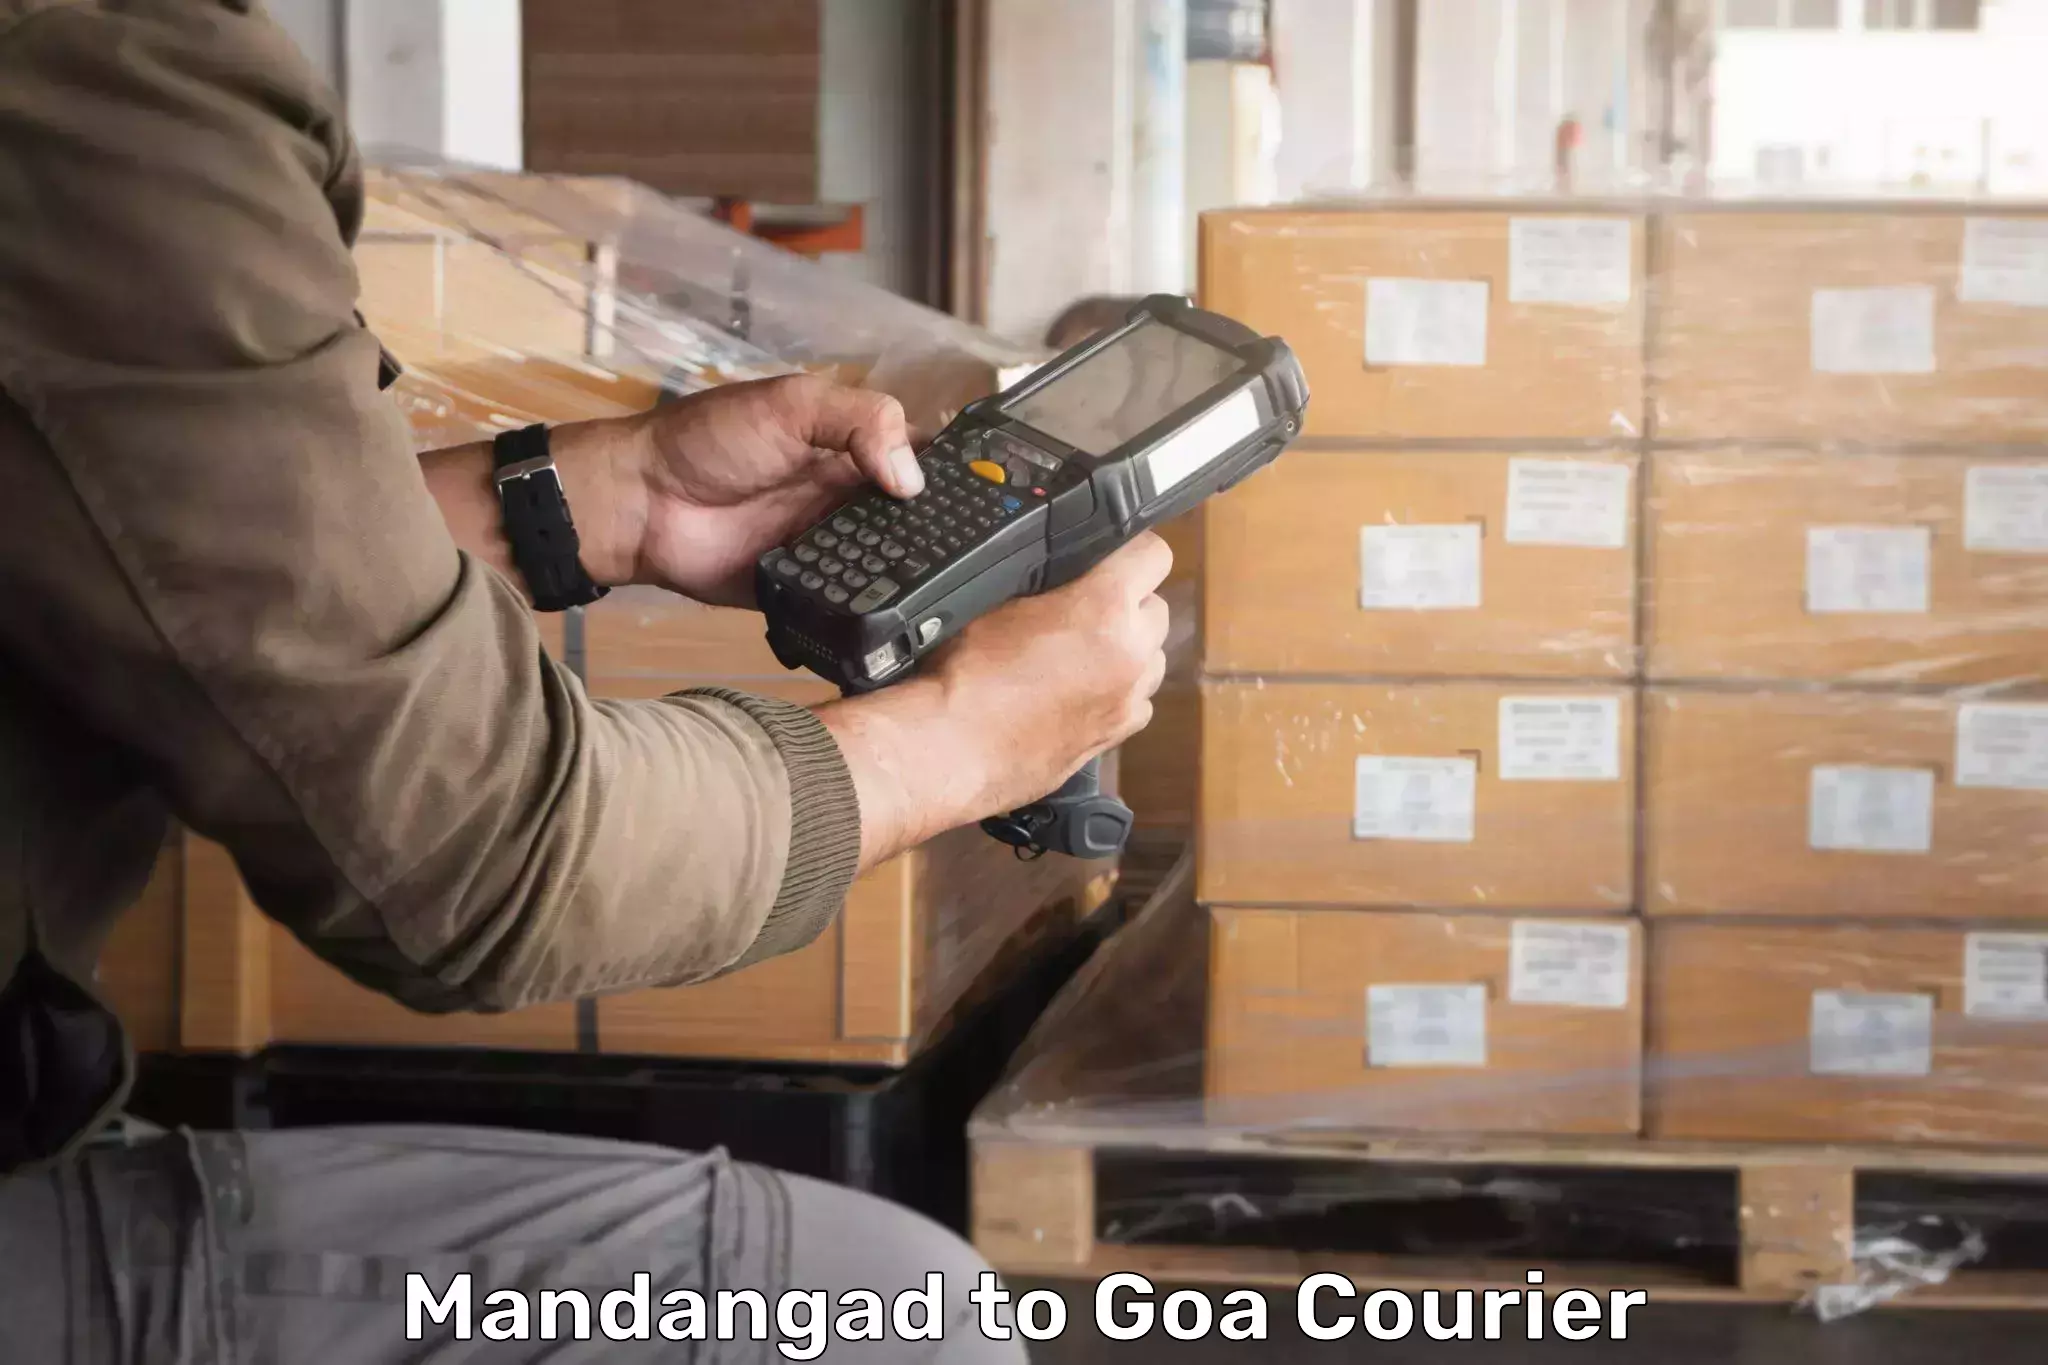 Next-generation courier services Mandangad to Mormugao Port